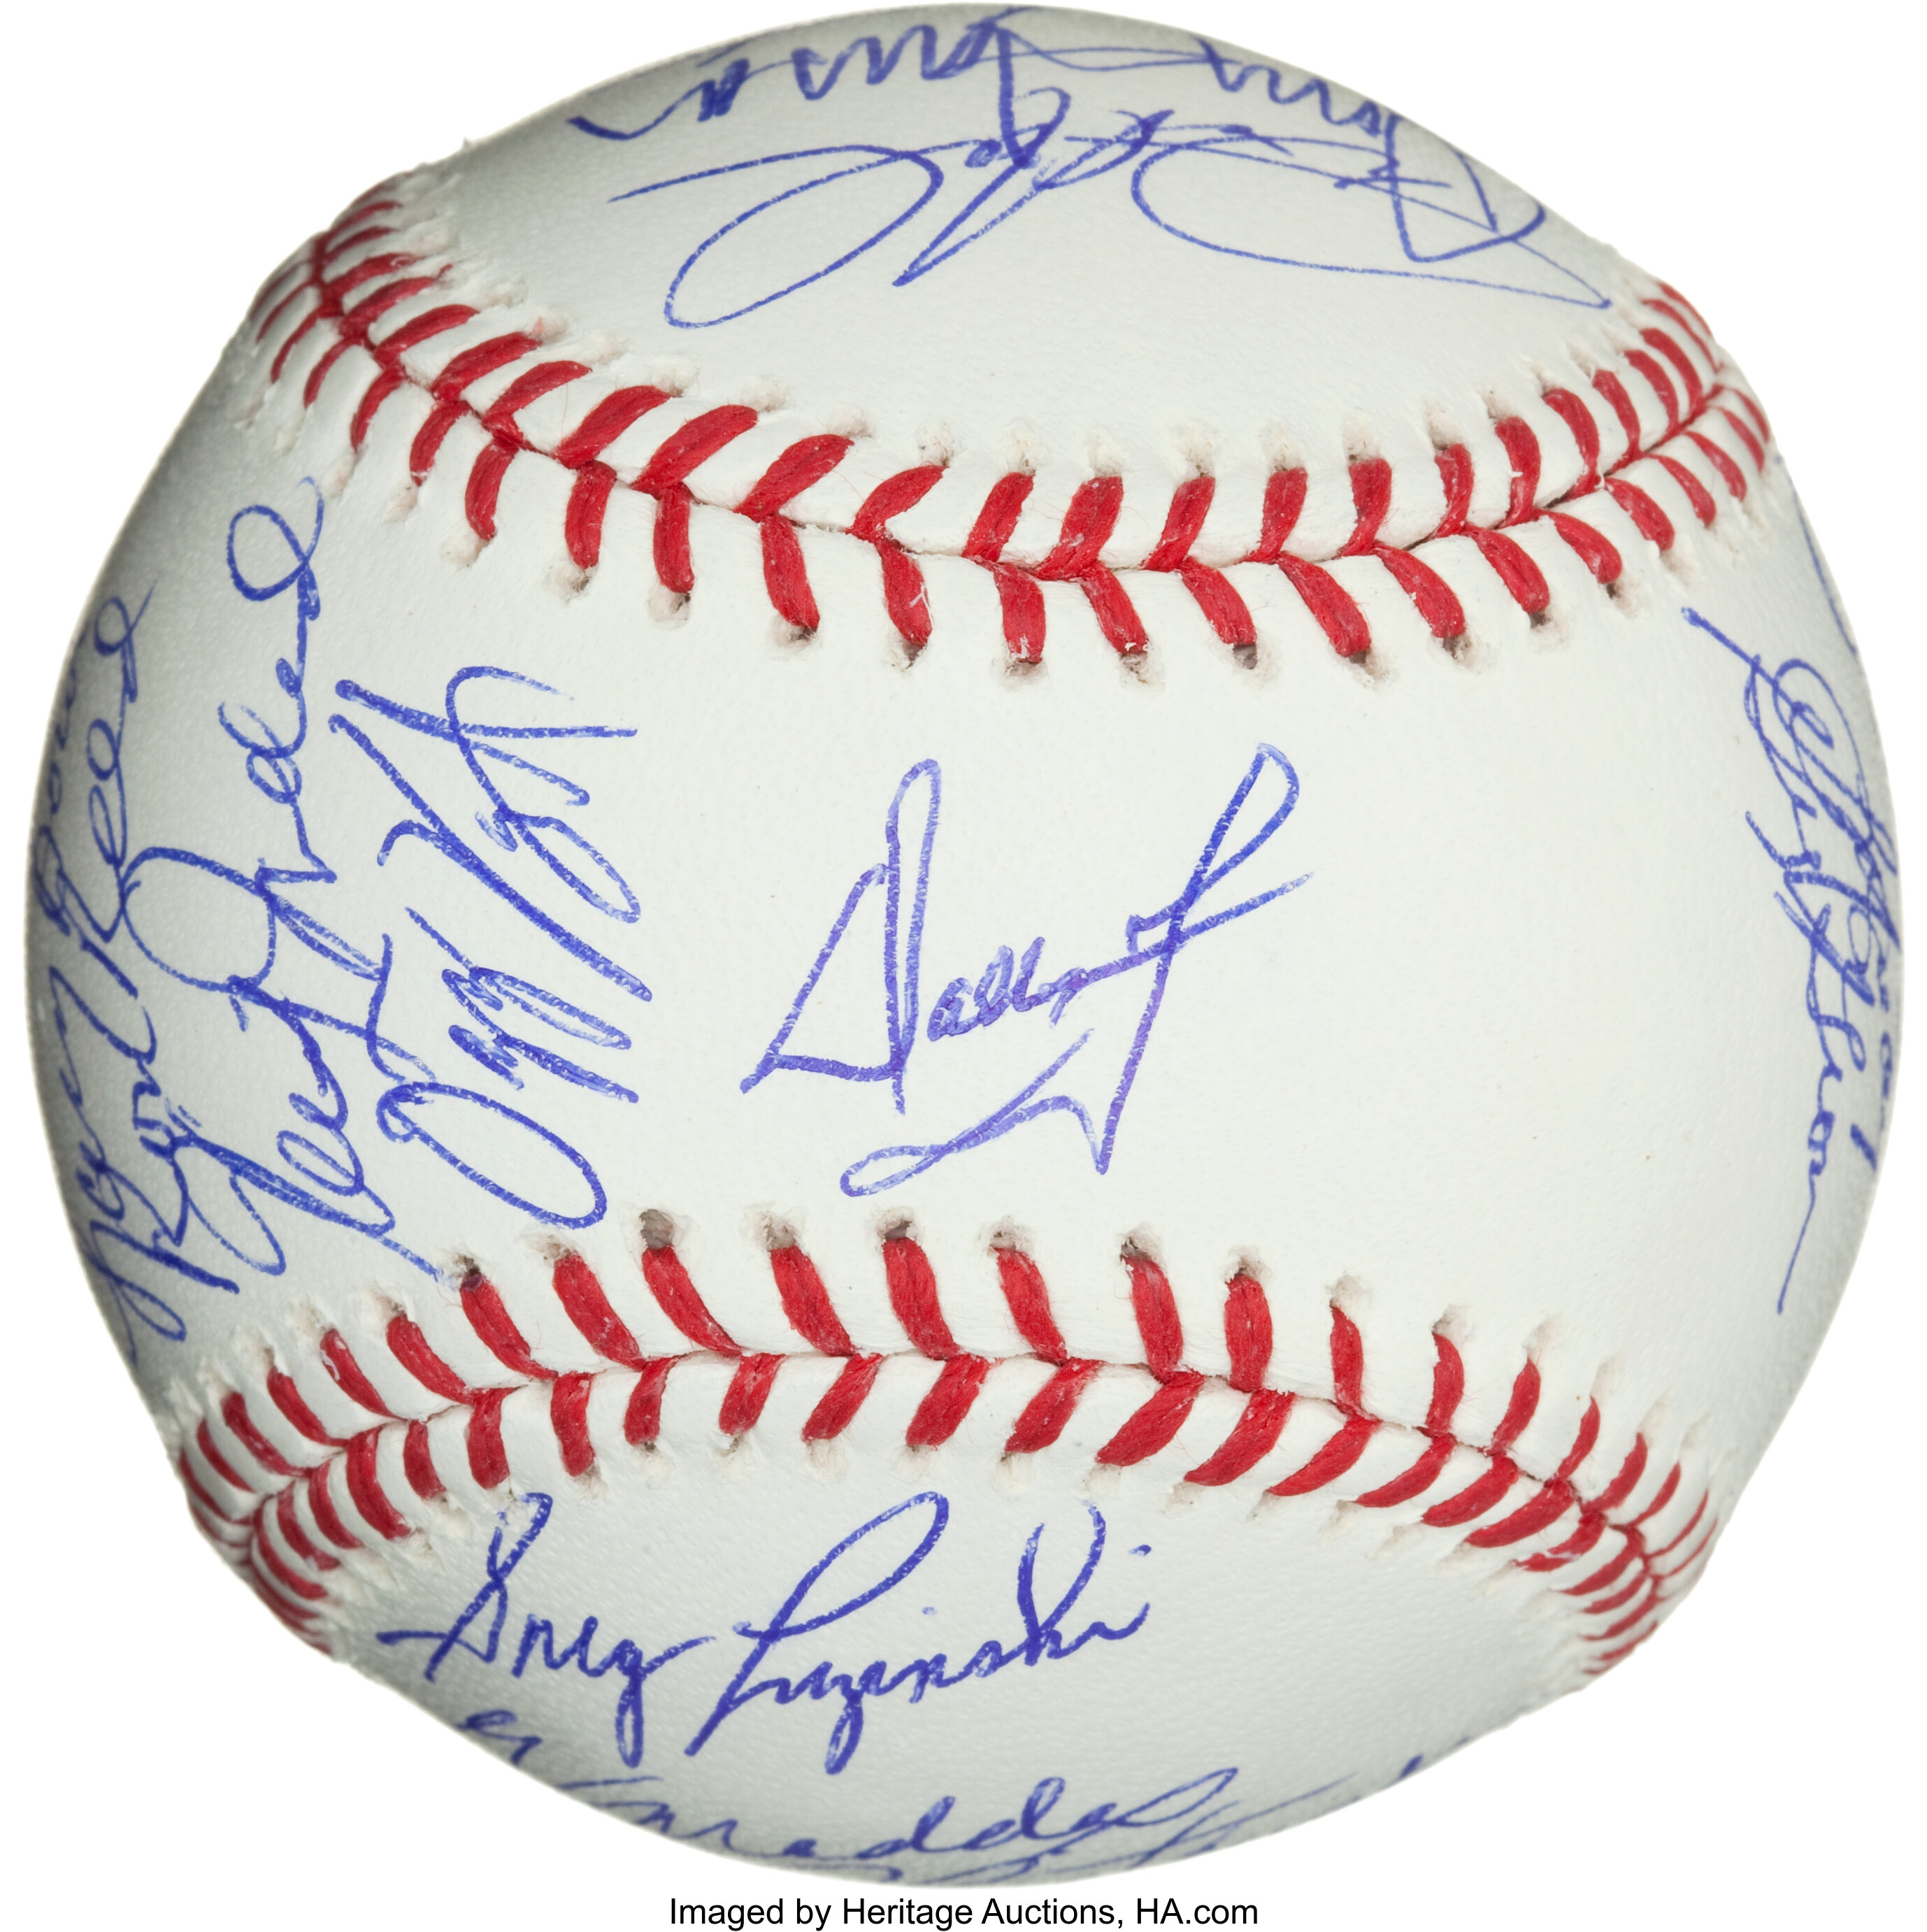 Greg Luzinski Phillies 1980 Wsc Signed Autographed M.l. Baseball Jsa  Wa301484